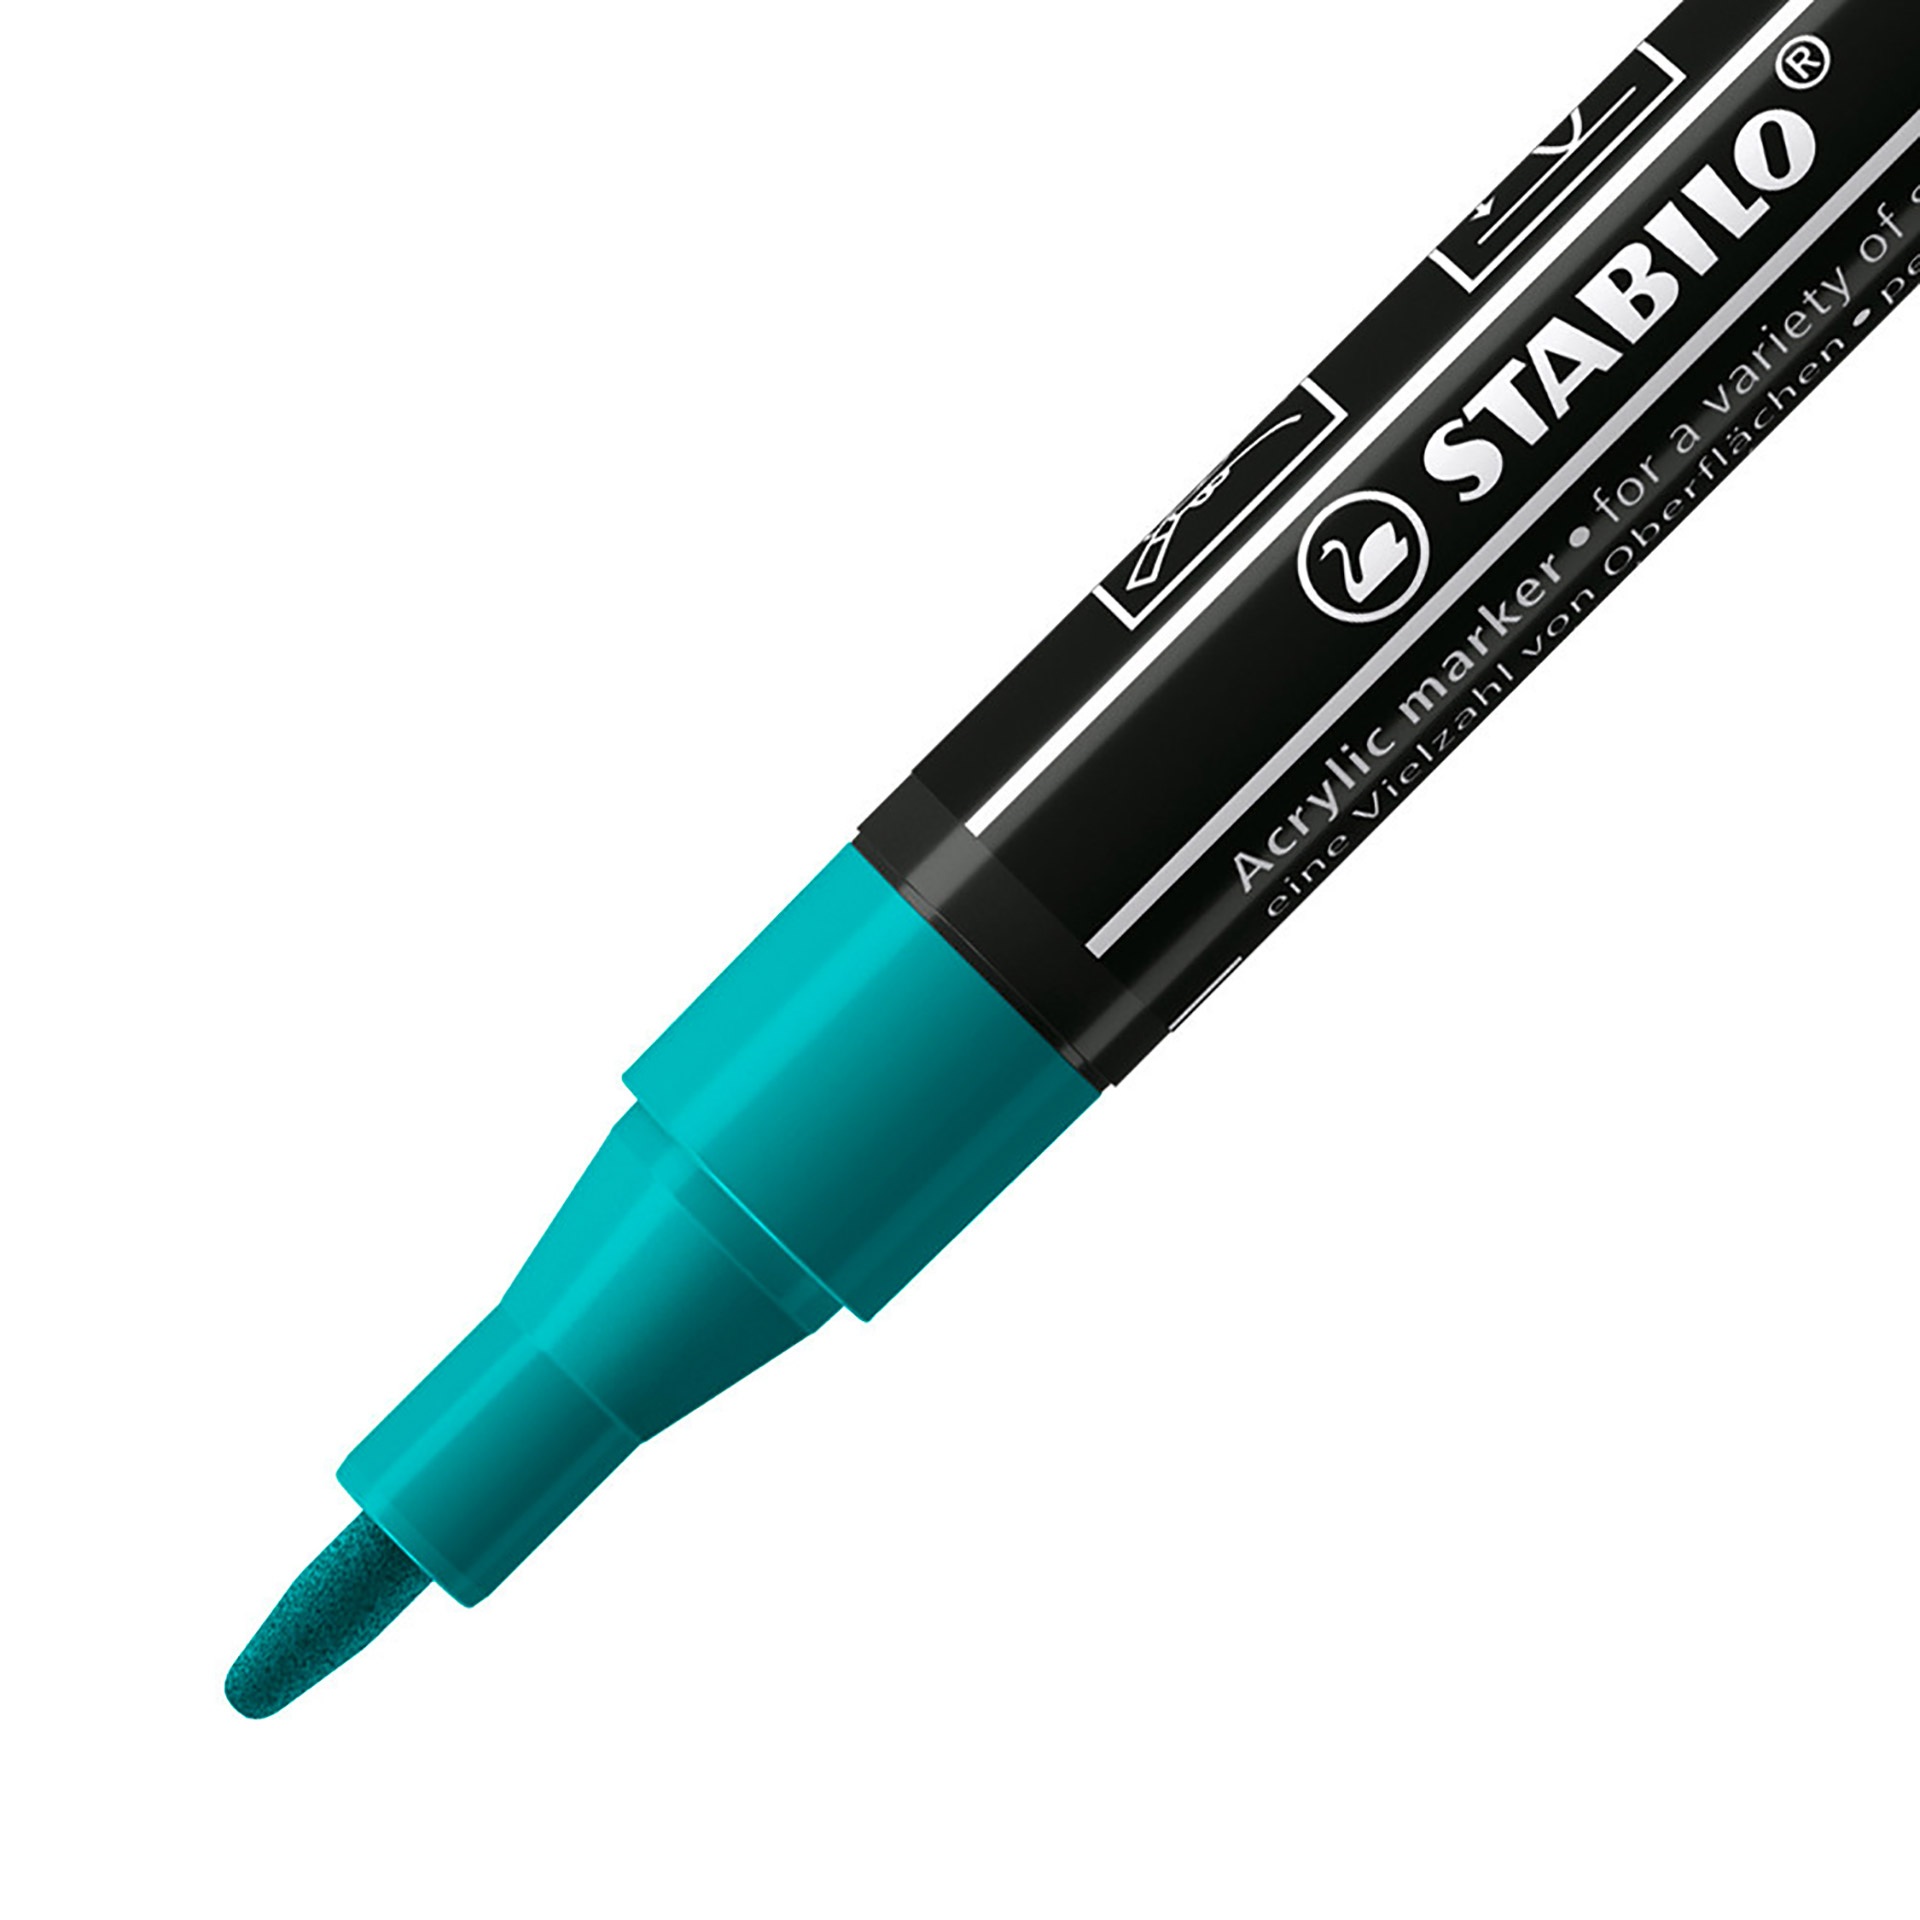 STABILO FREE Acrylic - T100 Punta rotonda 1-2mm - Confezione da 5 - Verde Pino, , large